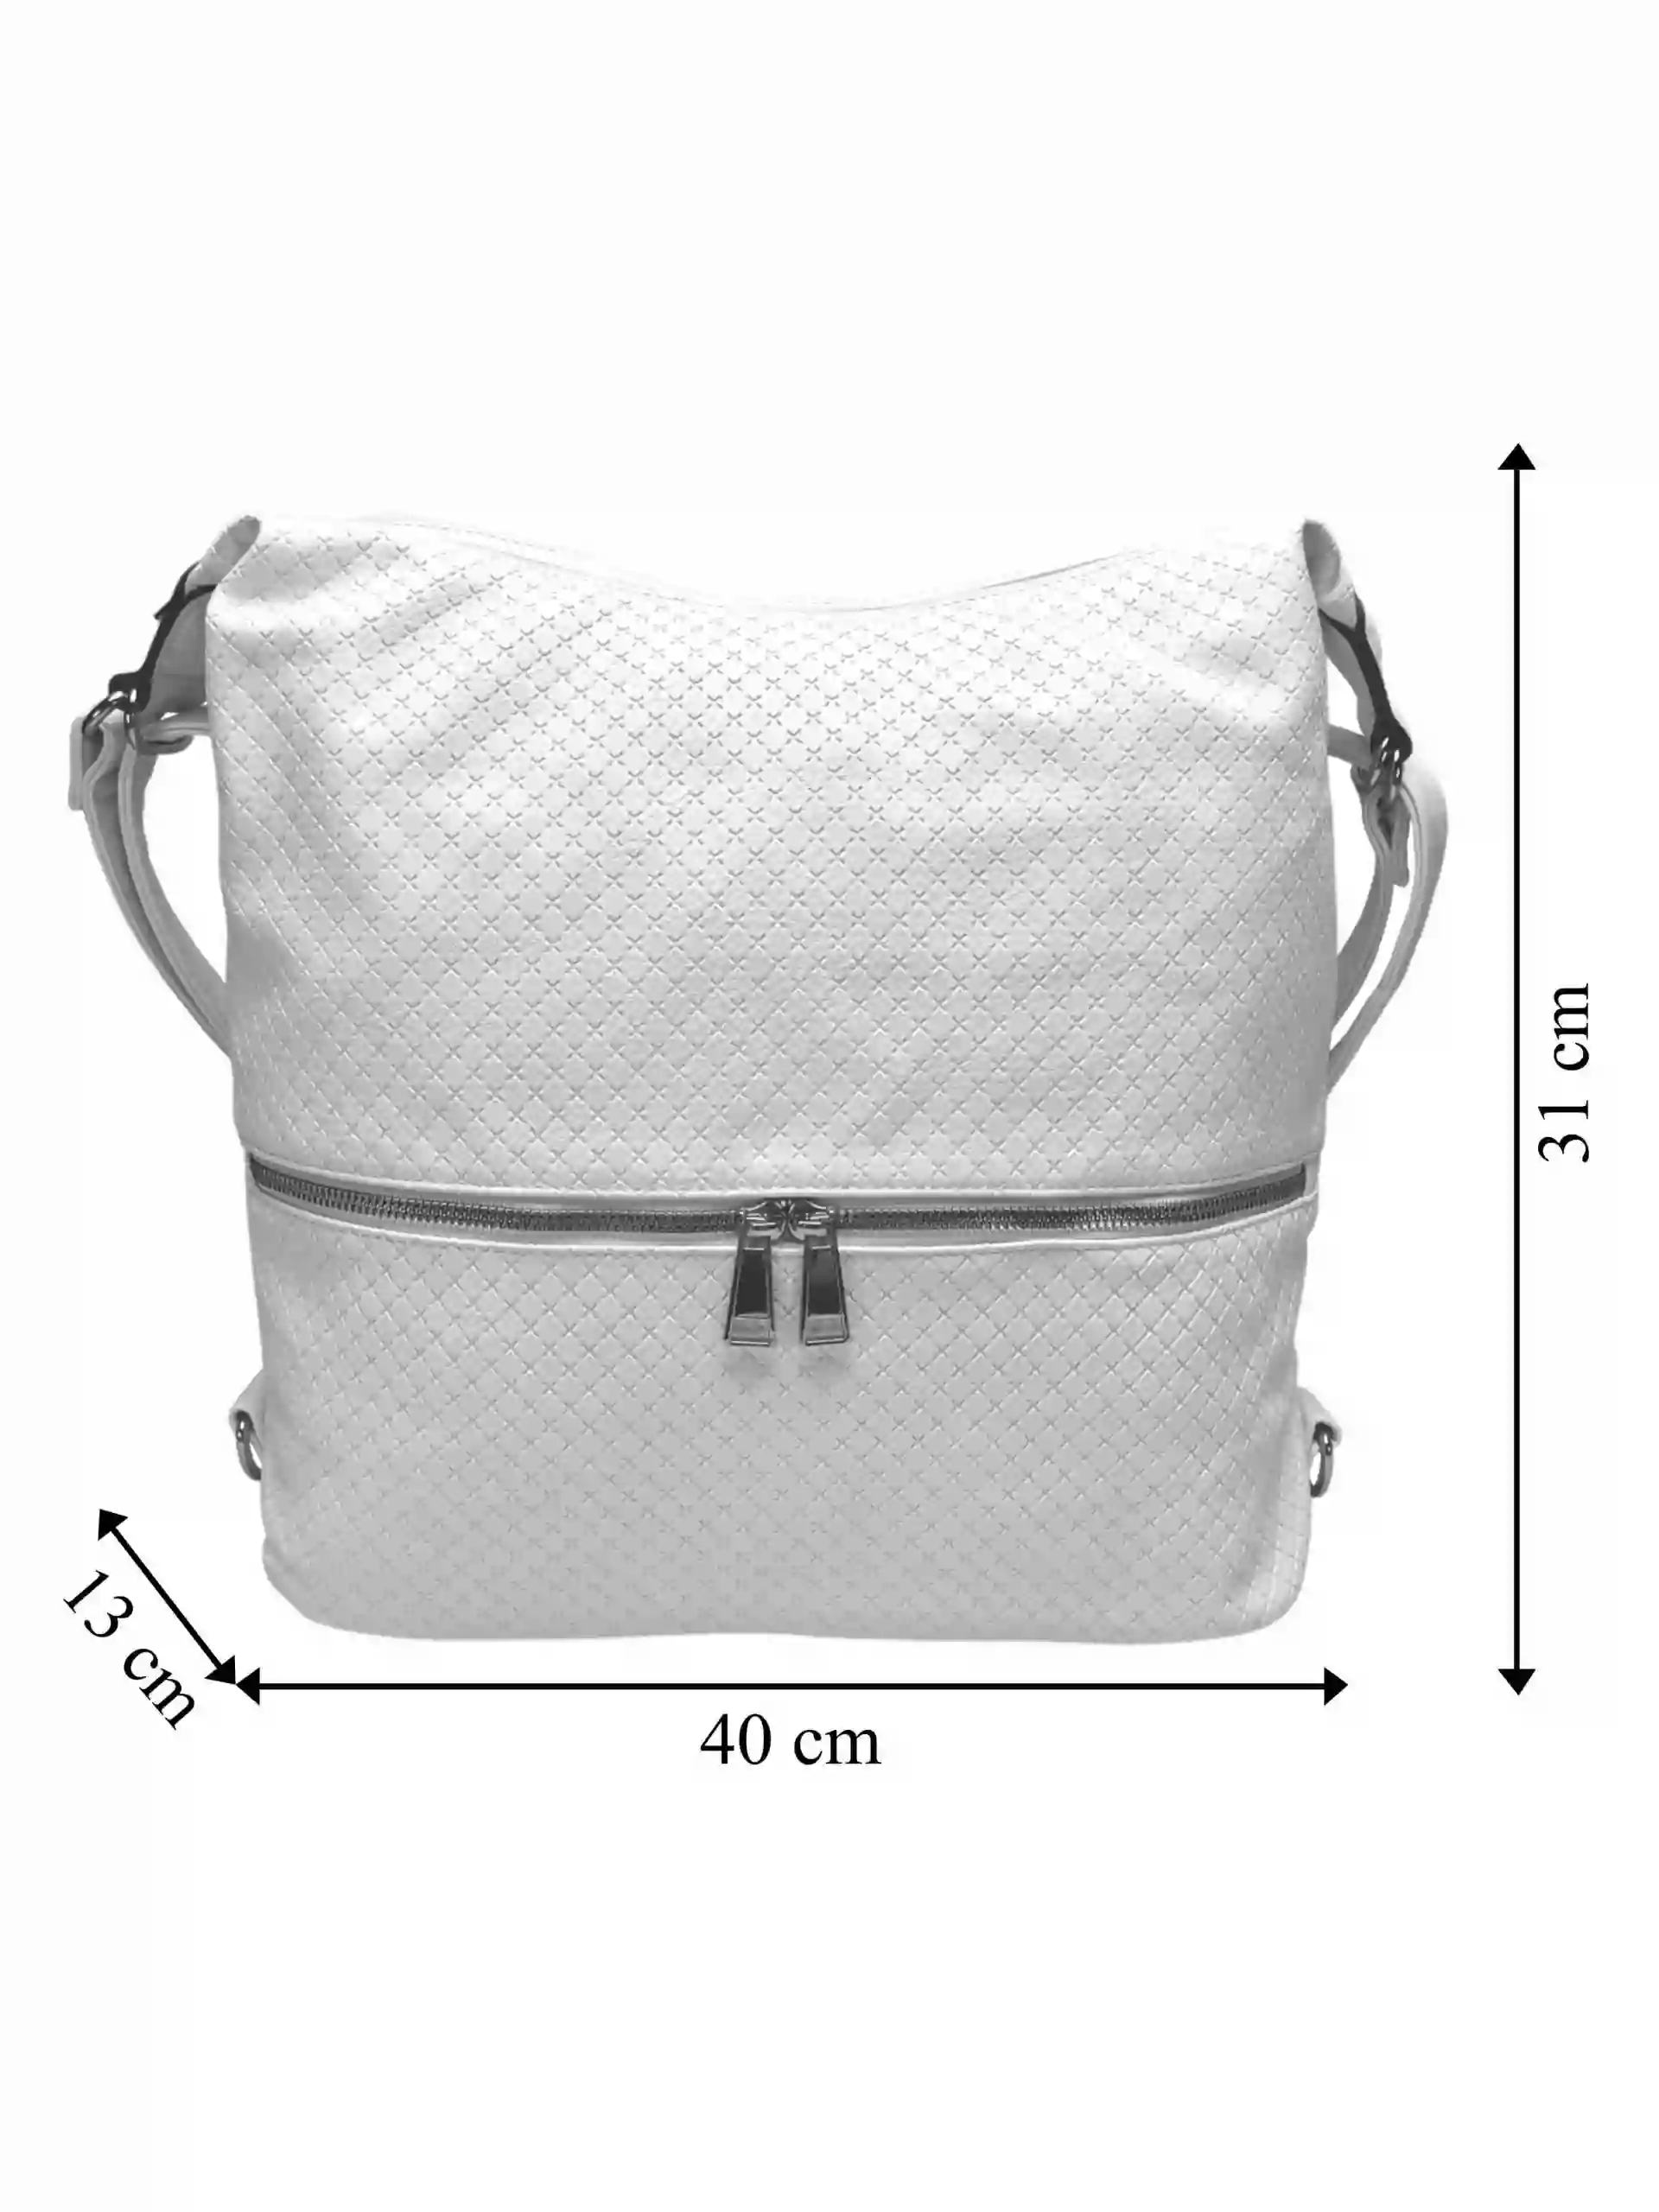 Velký bílý kabelko-batoh 2v1 s praktickou kapsou, Tapple, H190010N+, přední strana kabelko-batohu 2v1 s rozměry